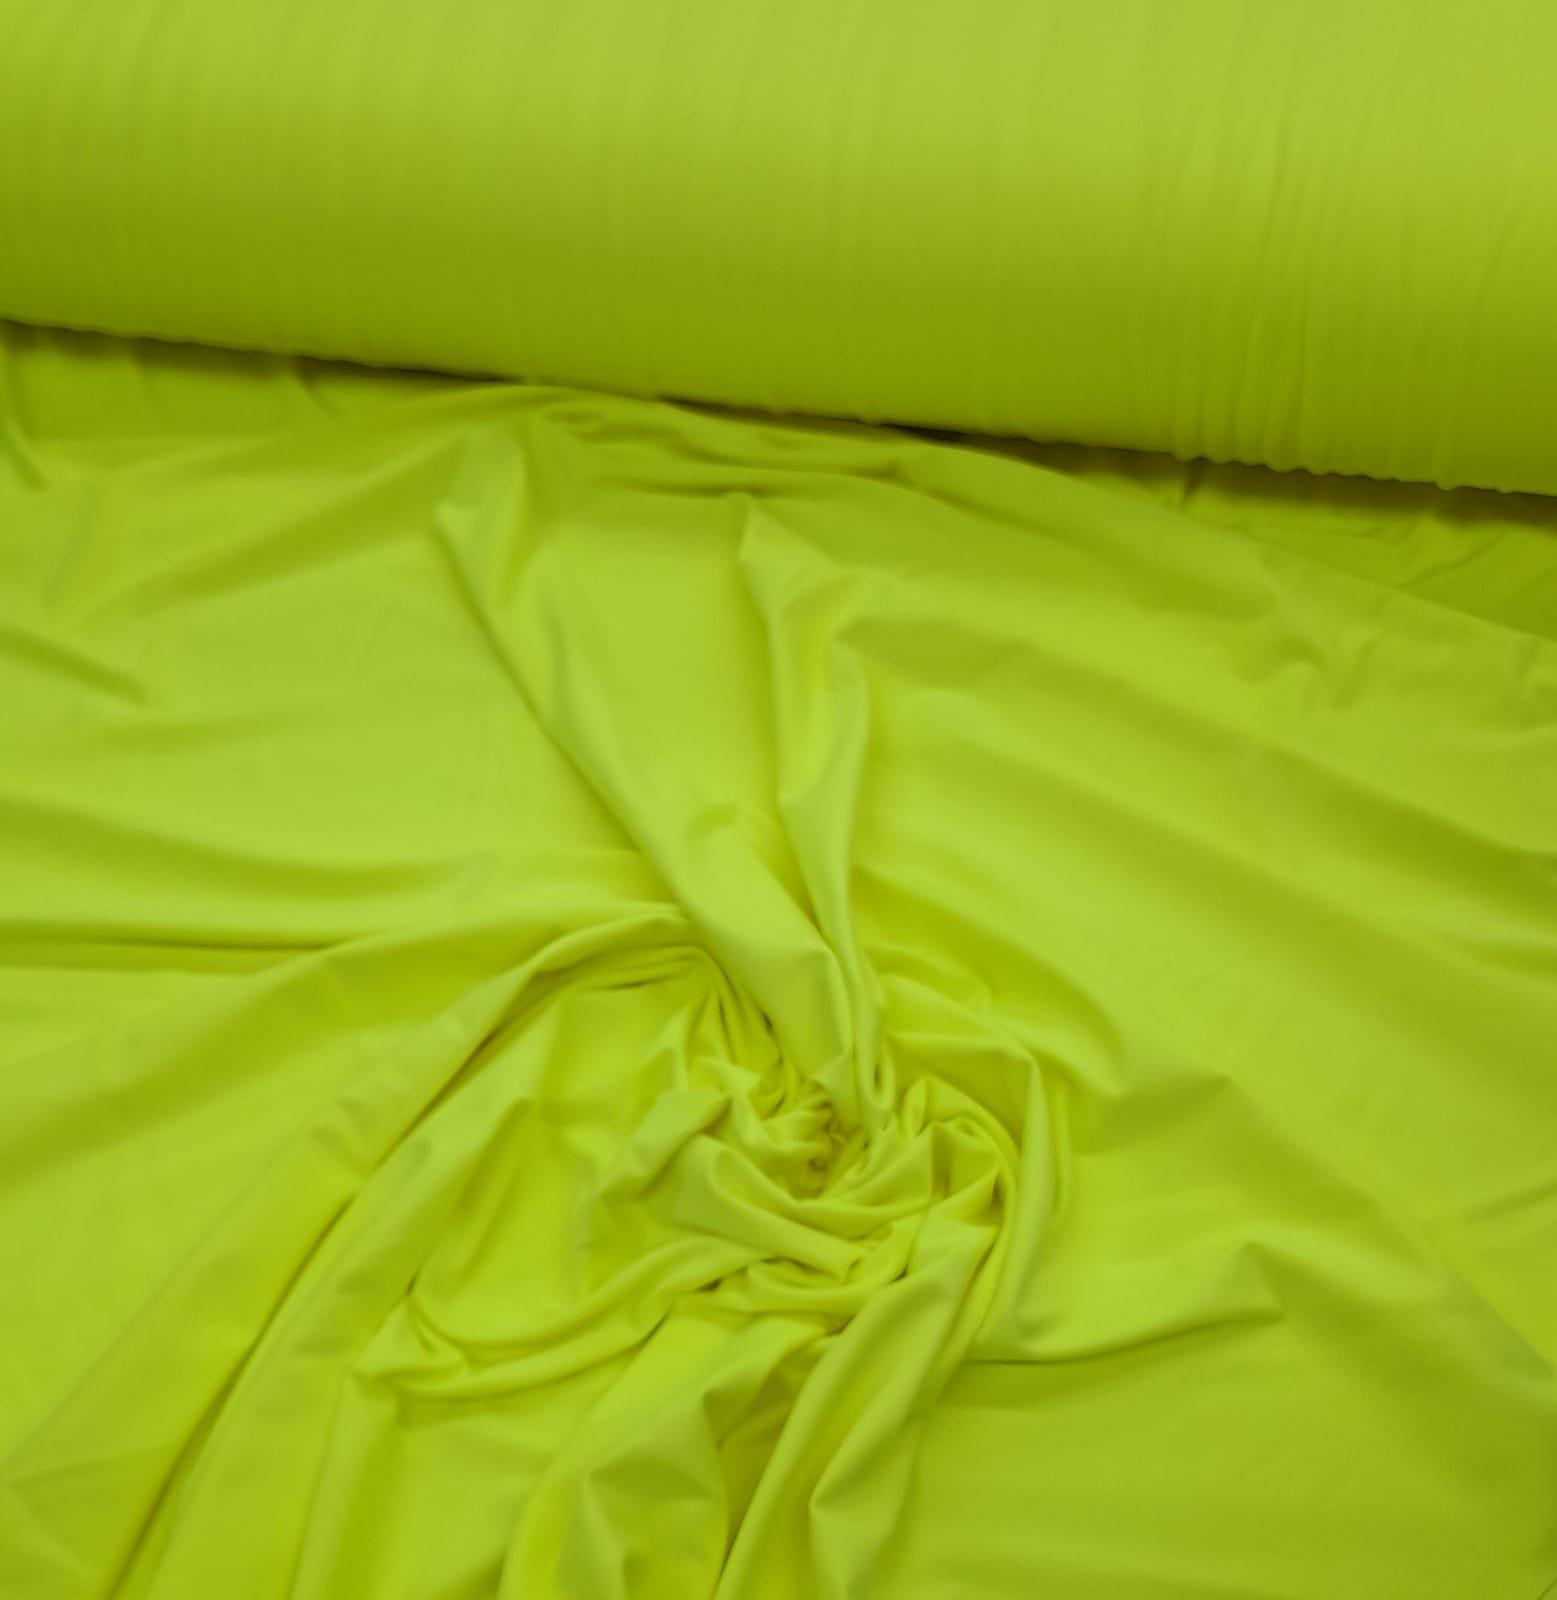 Tecido Lycra Moda  Amarelo Neon